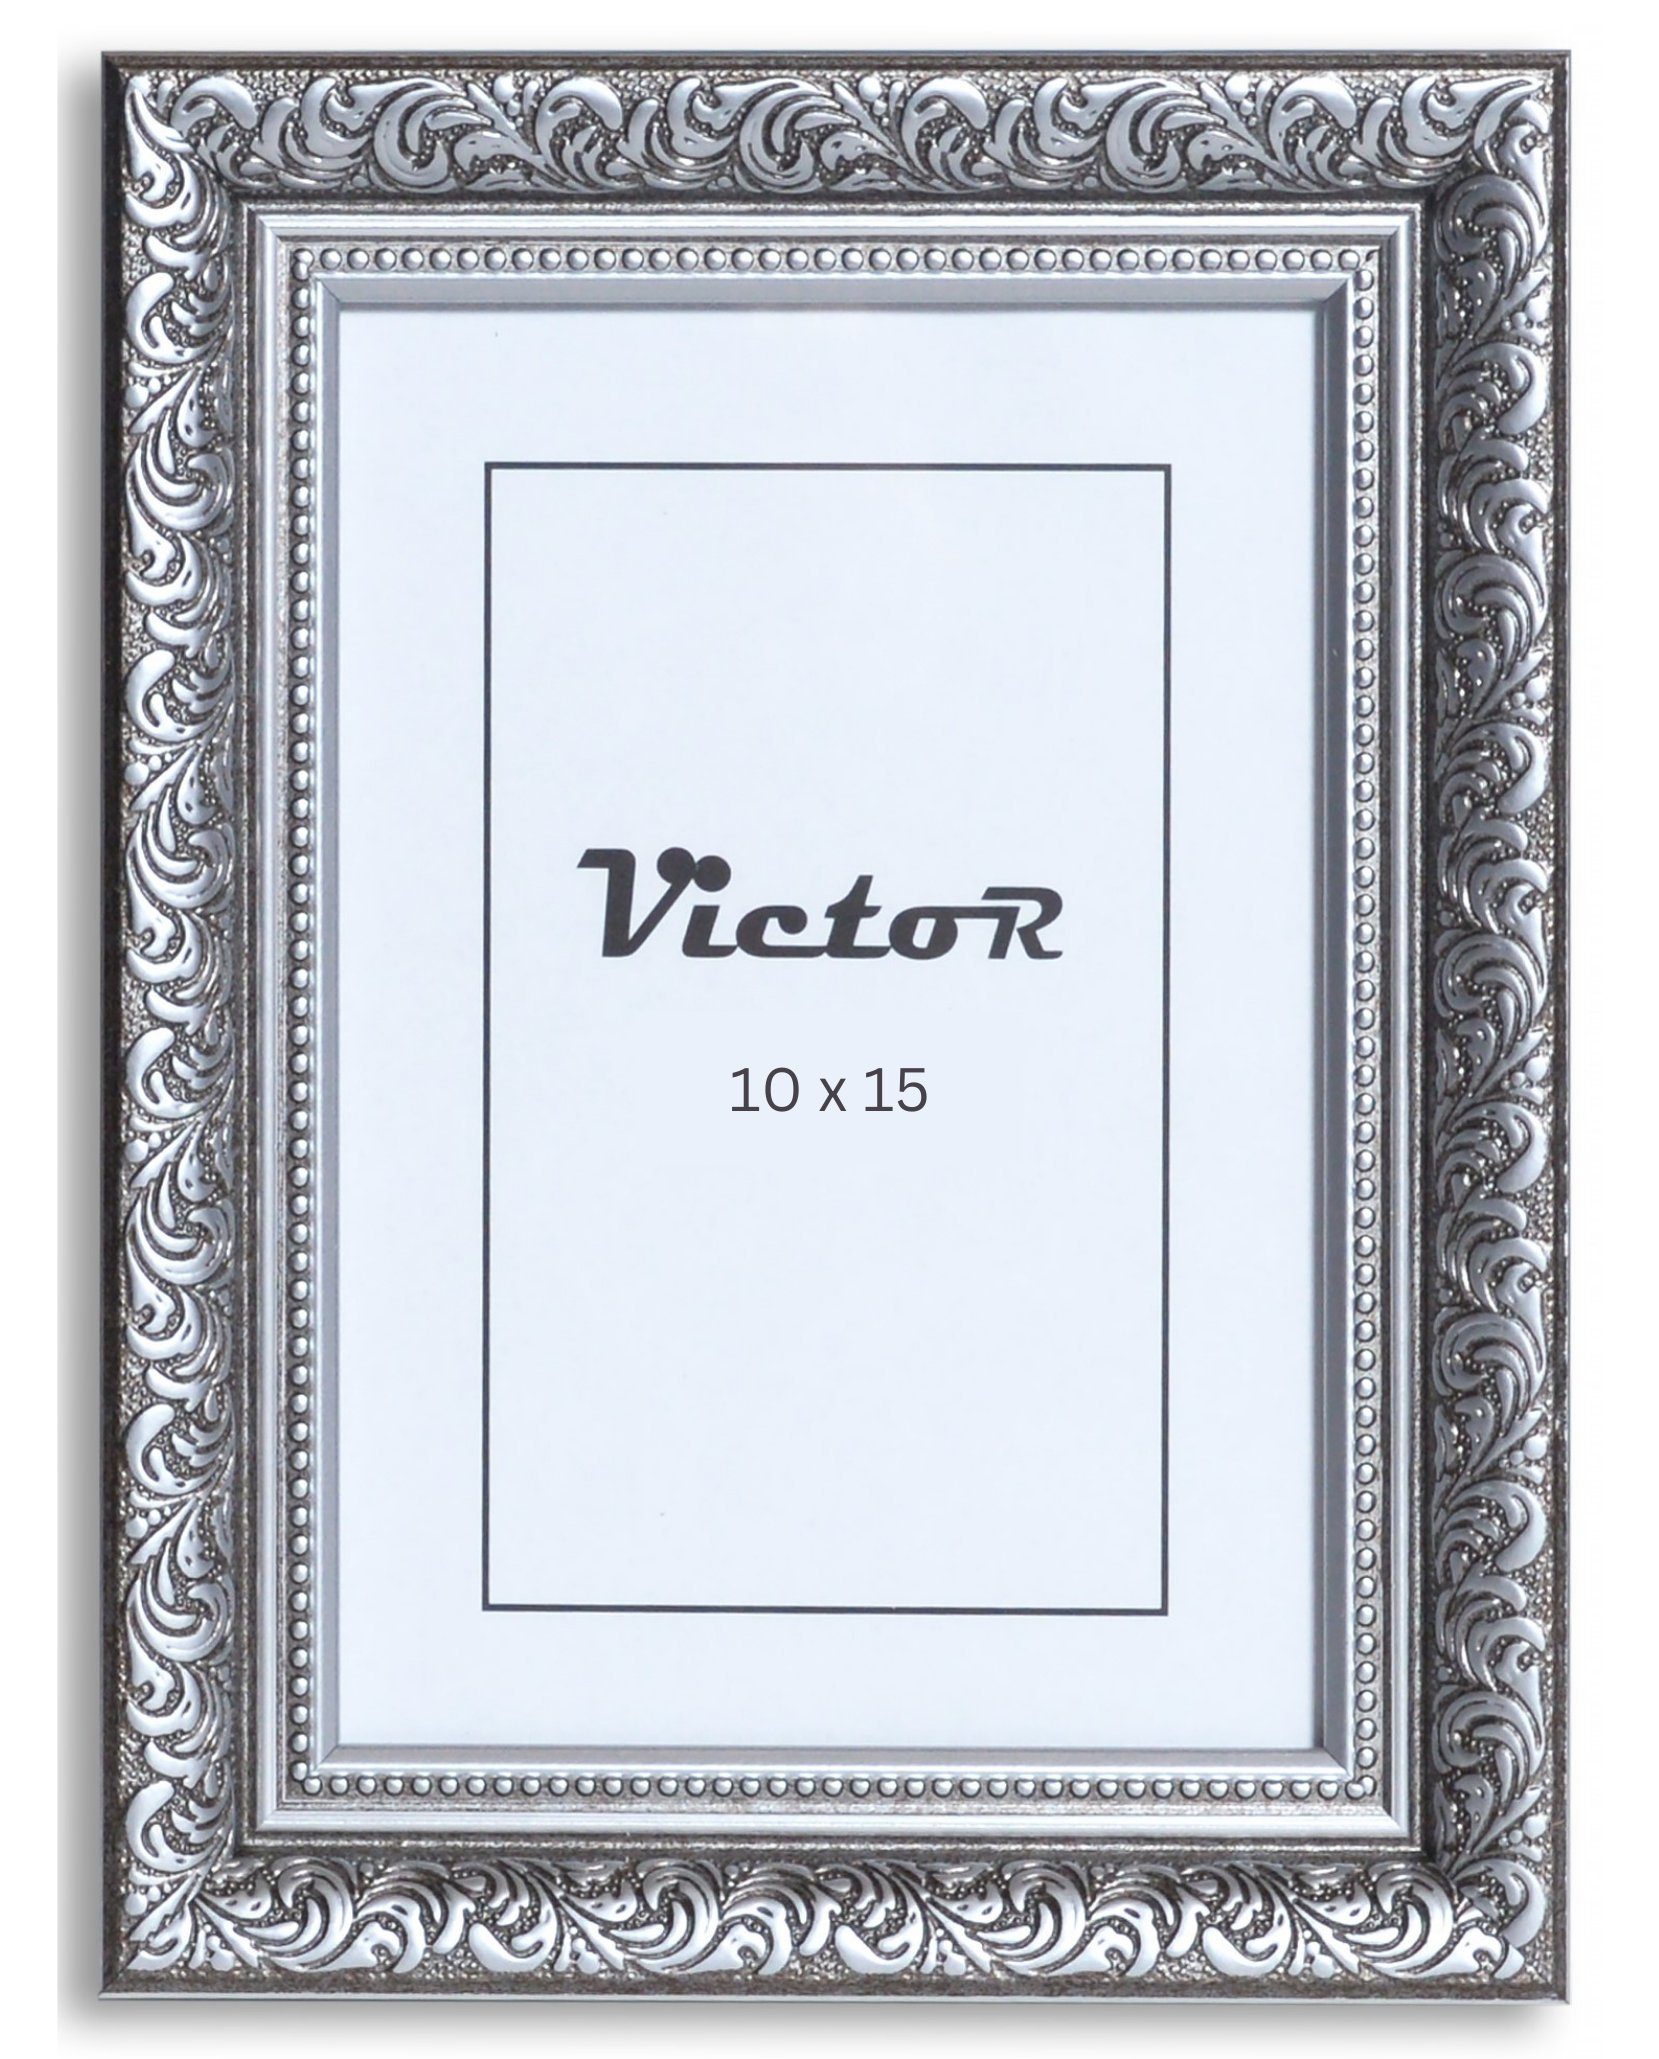 Victor (Zenith) Bilderrahmen Rubens, Bilderrahmen 10x15 cm Schwarz Silber A6, Bilderrahmen Barock, Antik